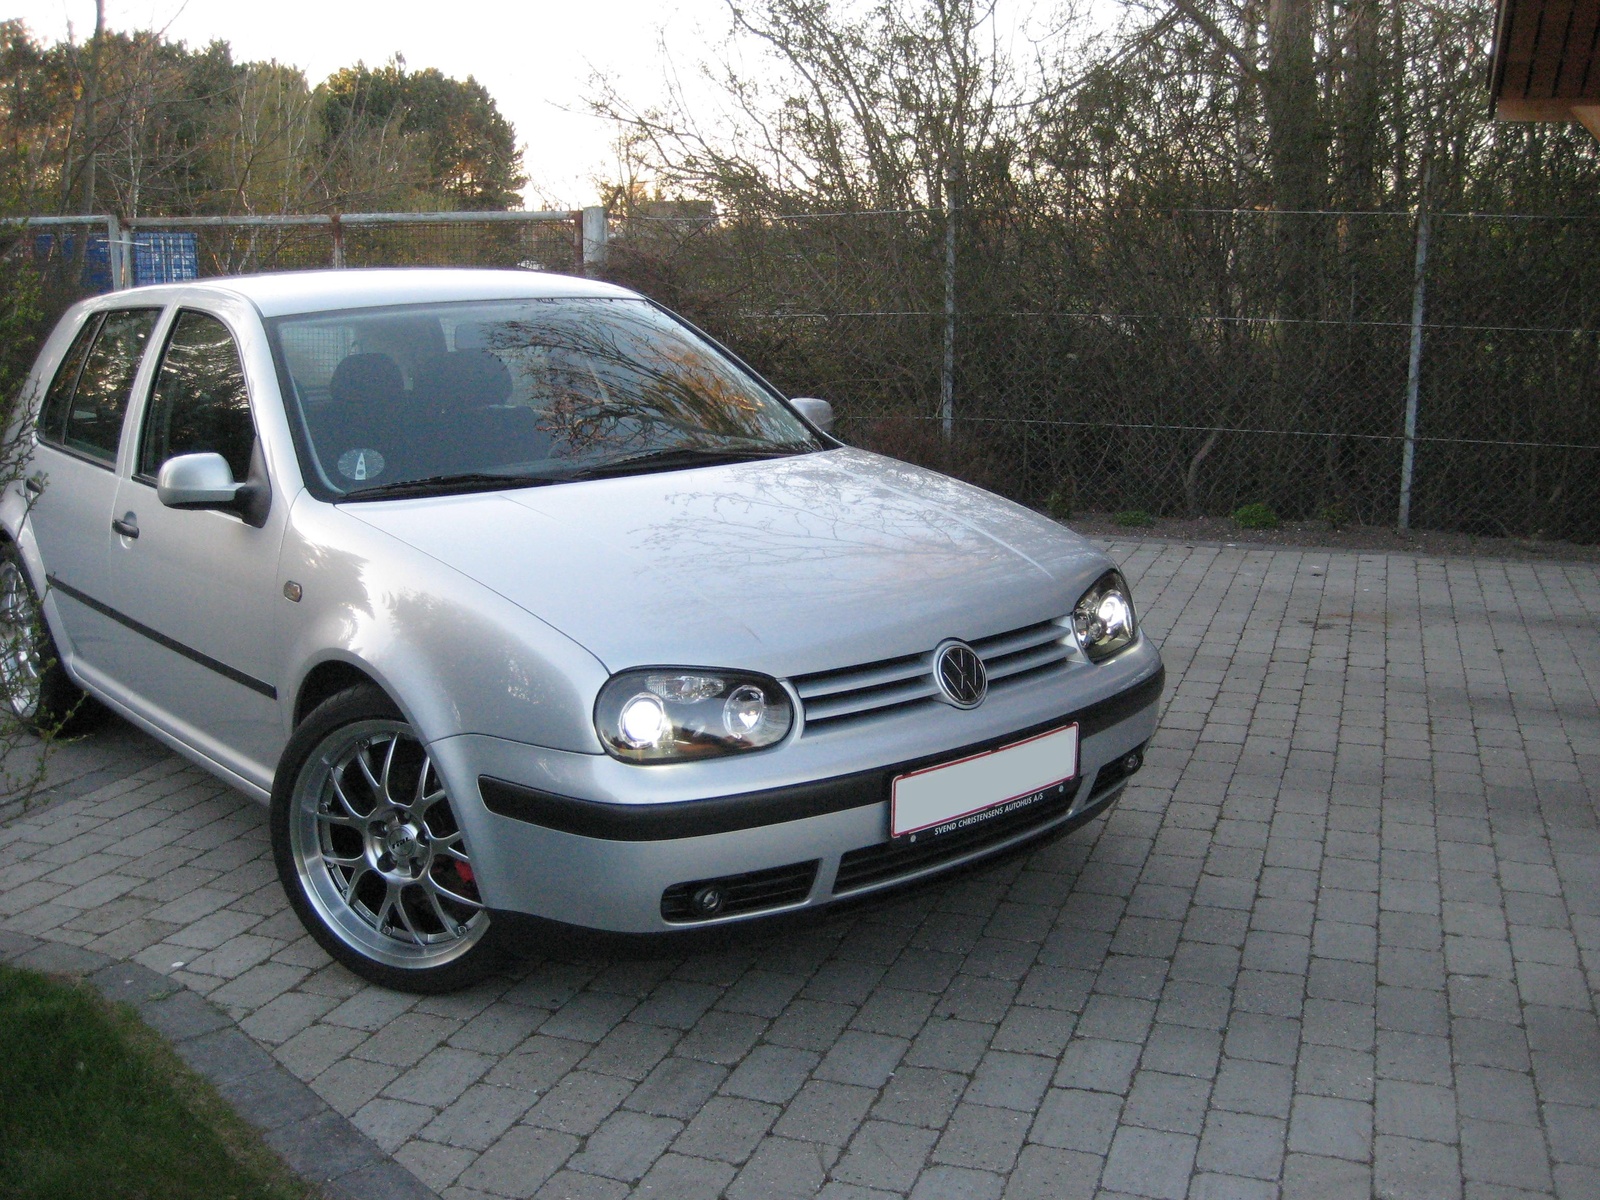 1999 Volkswagen Golf Pictures CarGurus